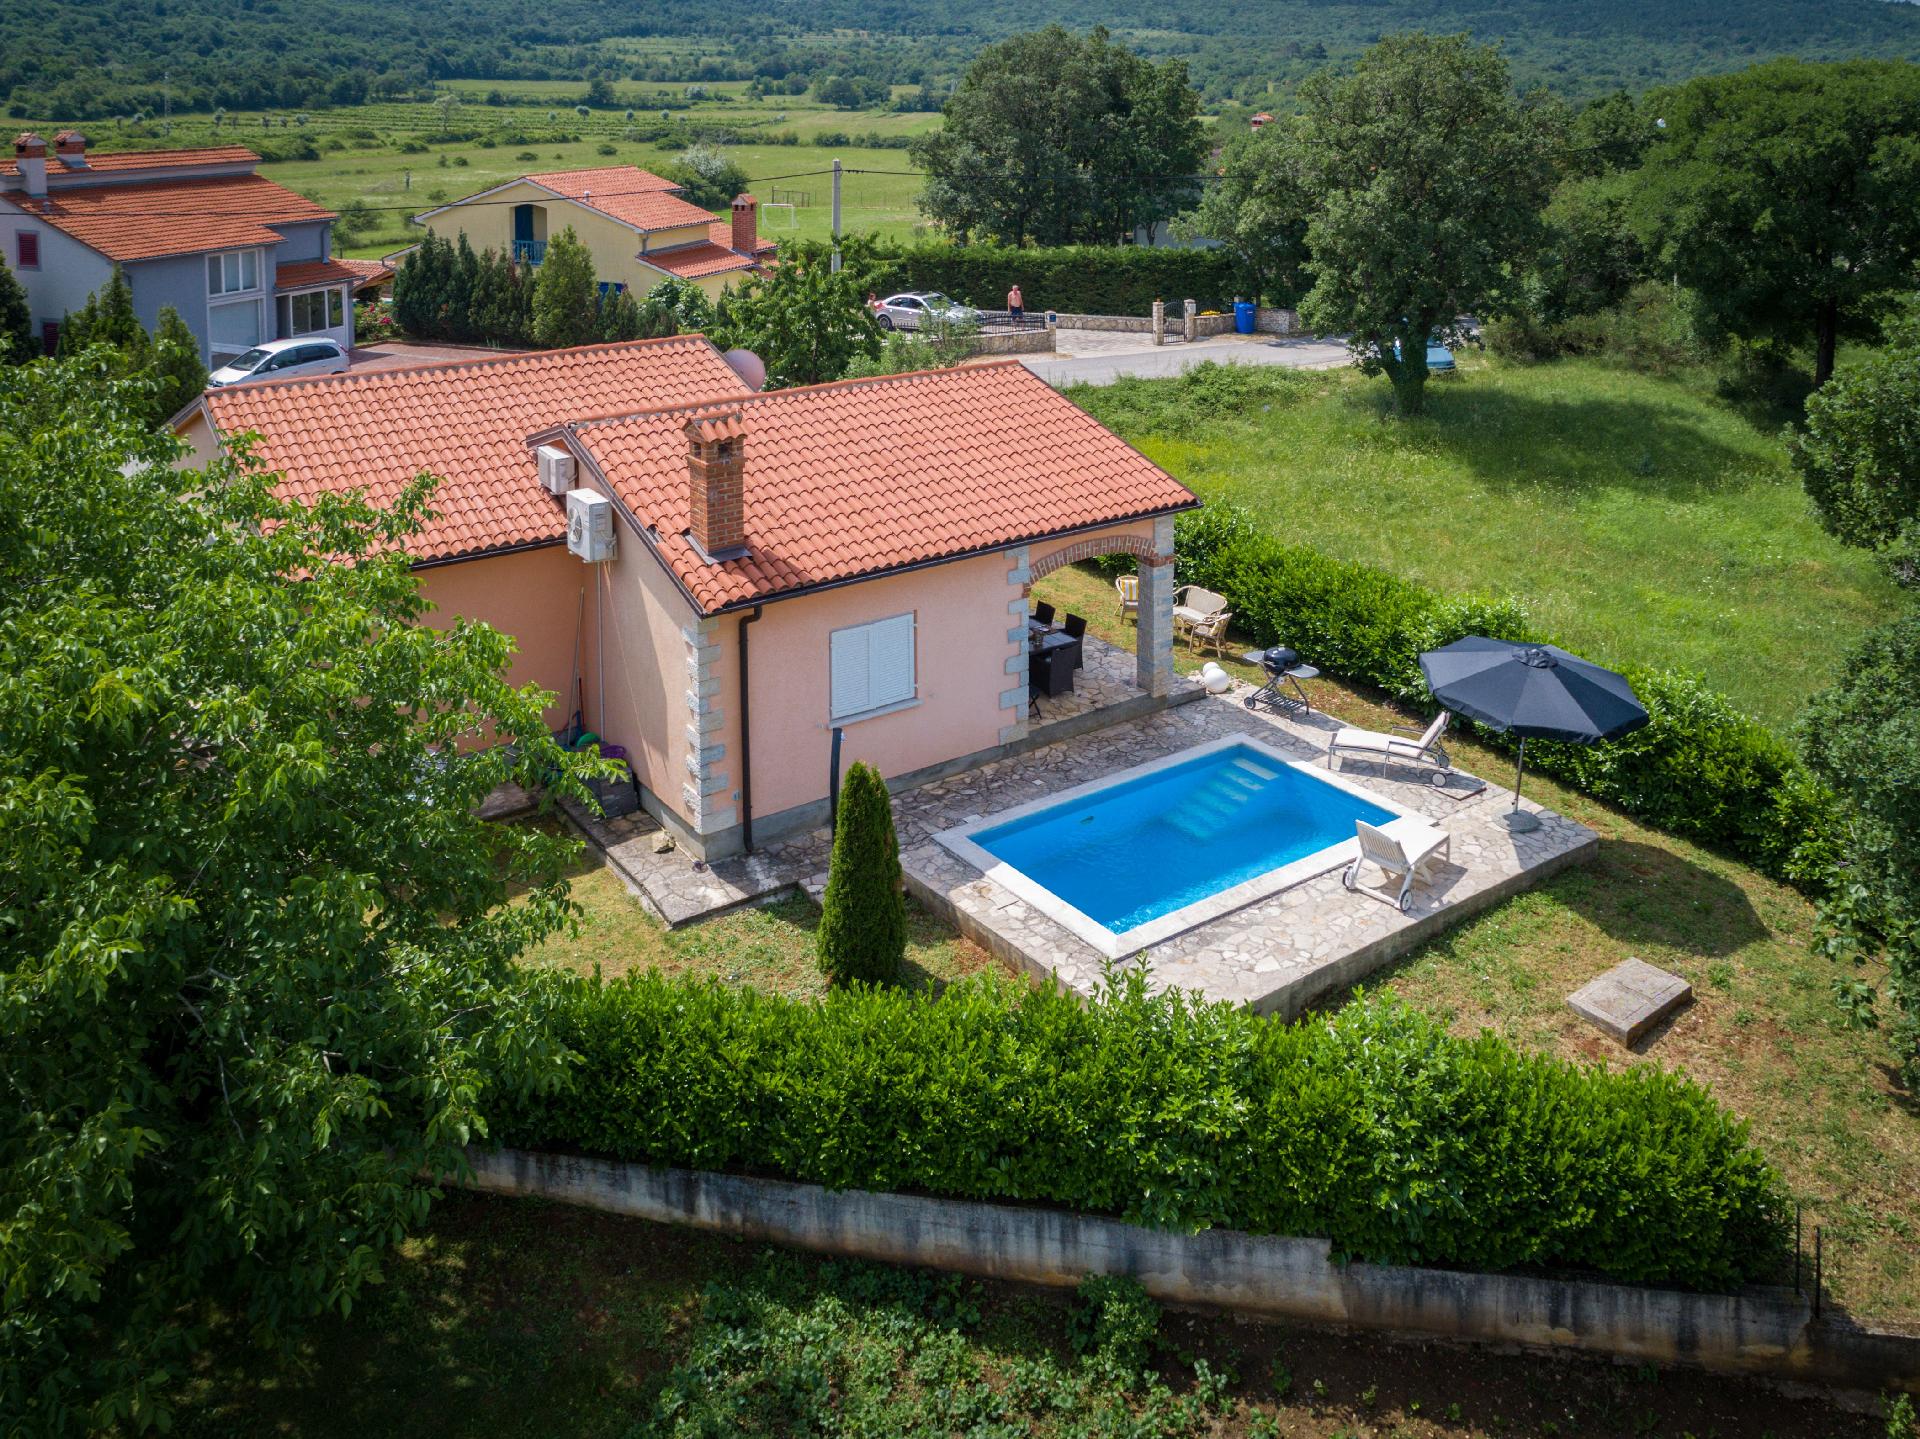 Ferienhaus mit Privatpool für 6 Personen  + 2 Ferienhaus in Kroatien